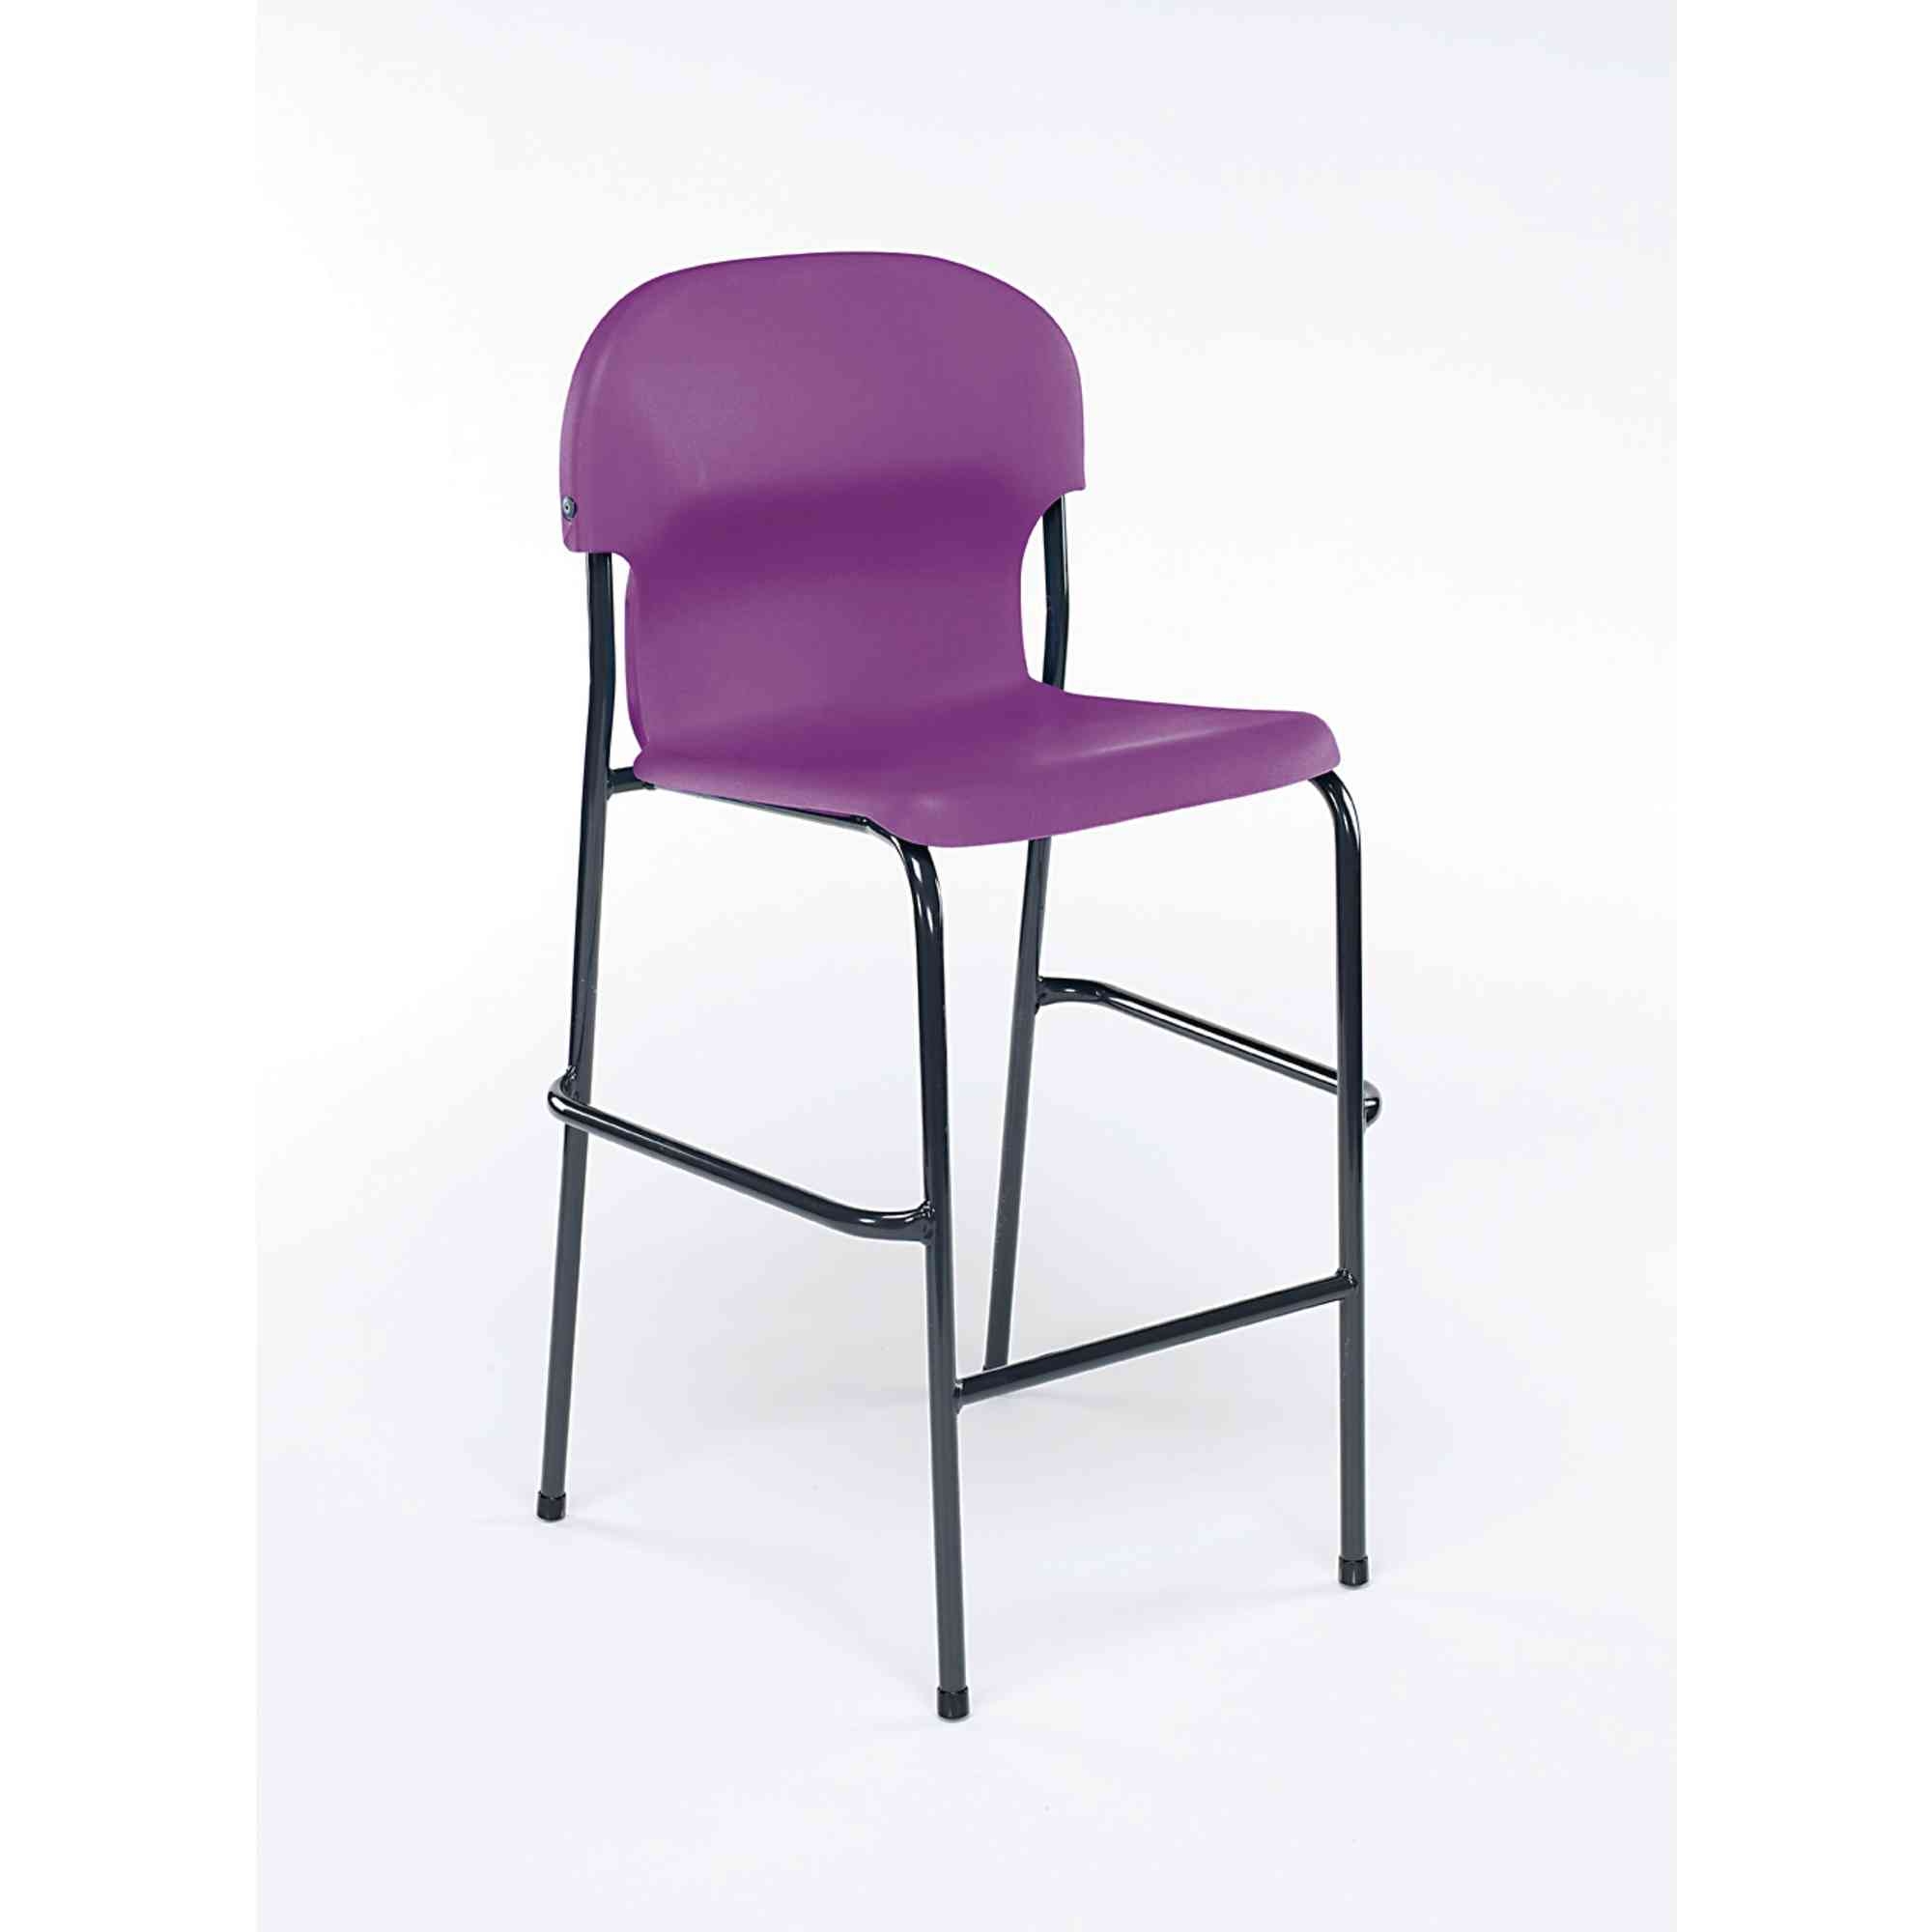 Chair 2000 High Chair - Lilac